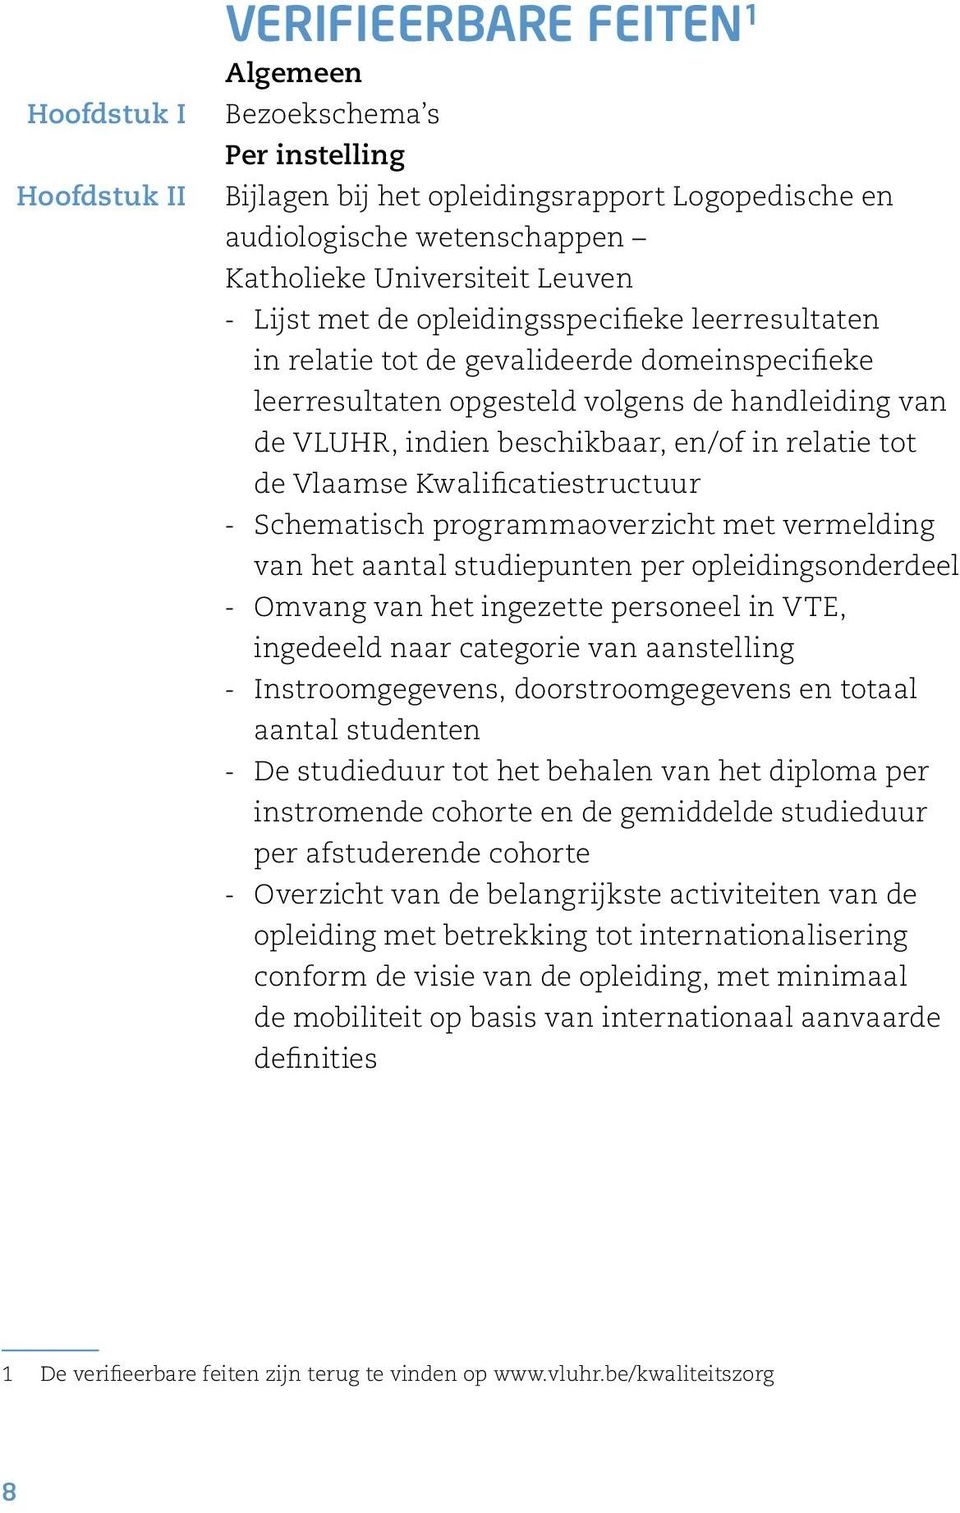 de Vlaamse Kwalificatiestructuur Schematisch programmaoverzicht met vermelding van het aantal studiepunten per opleidingsonderdeel Omvang van het ingezette personeel in VTE, ingedeeld naar categorie